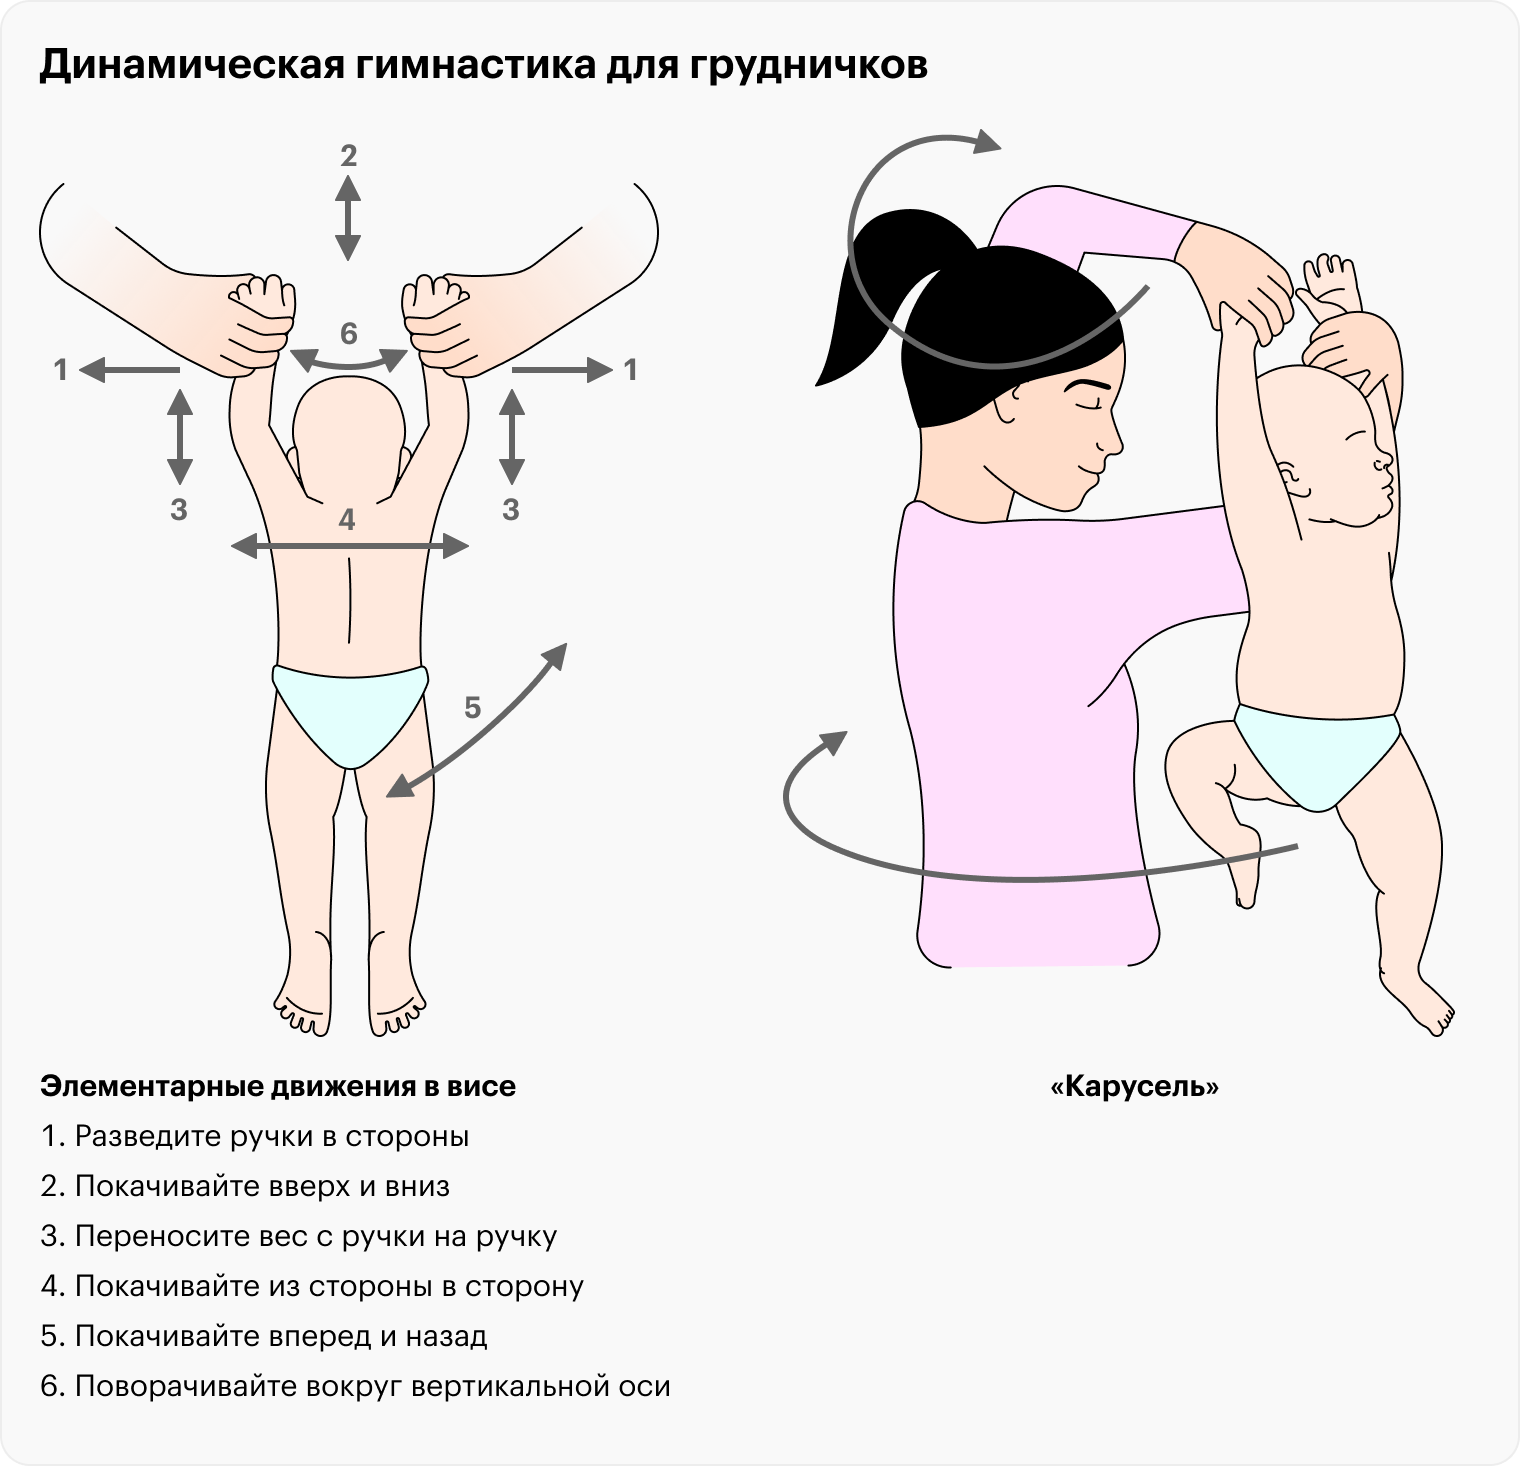 Иллюстрация из книги «Экология младенчества». Источник: lib.ru